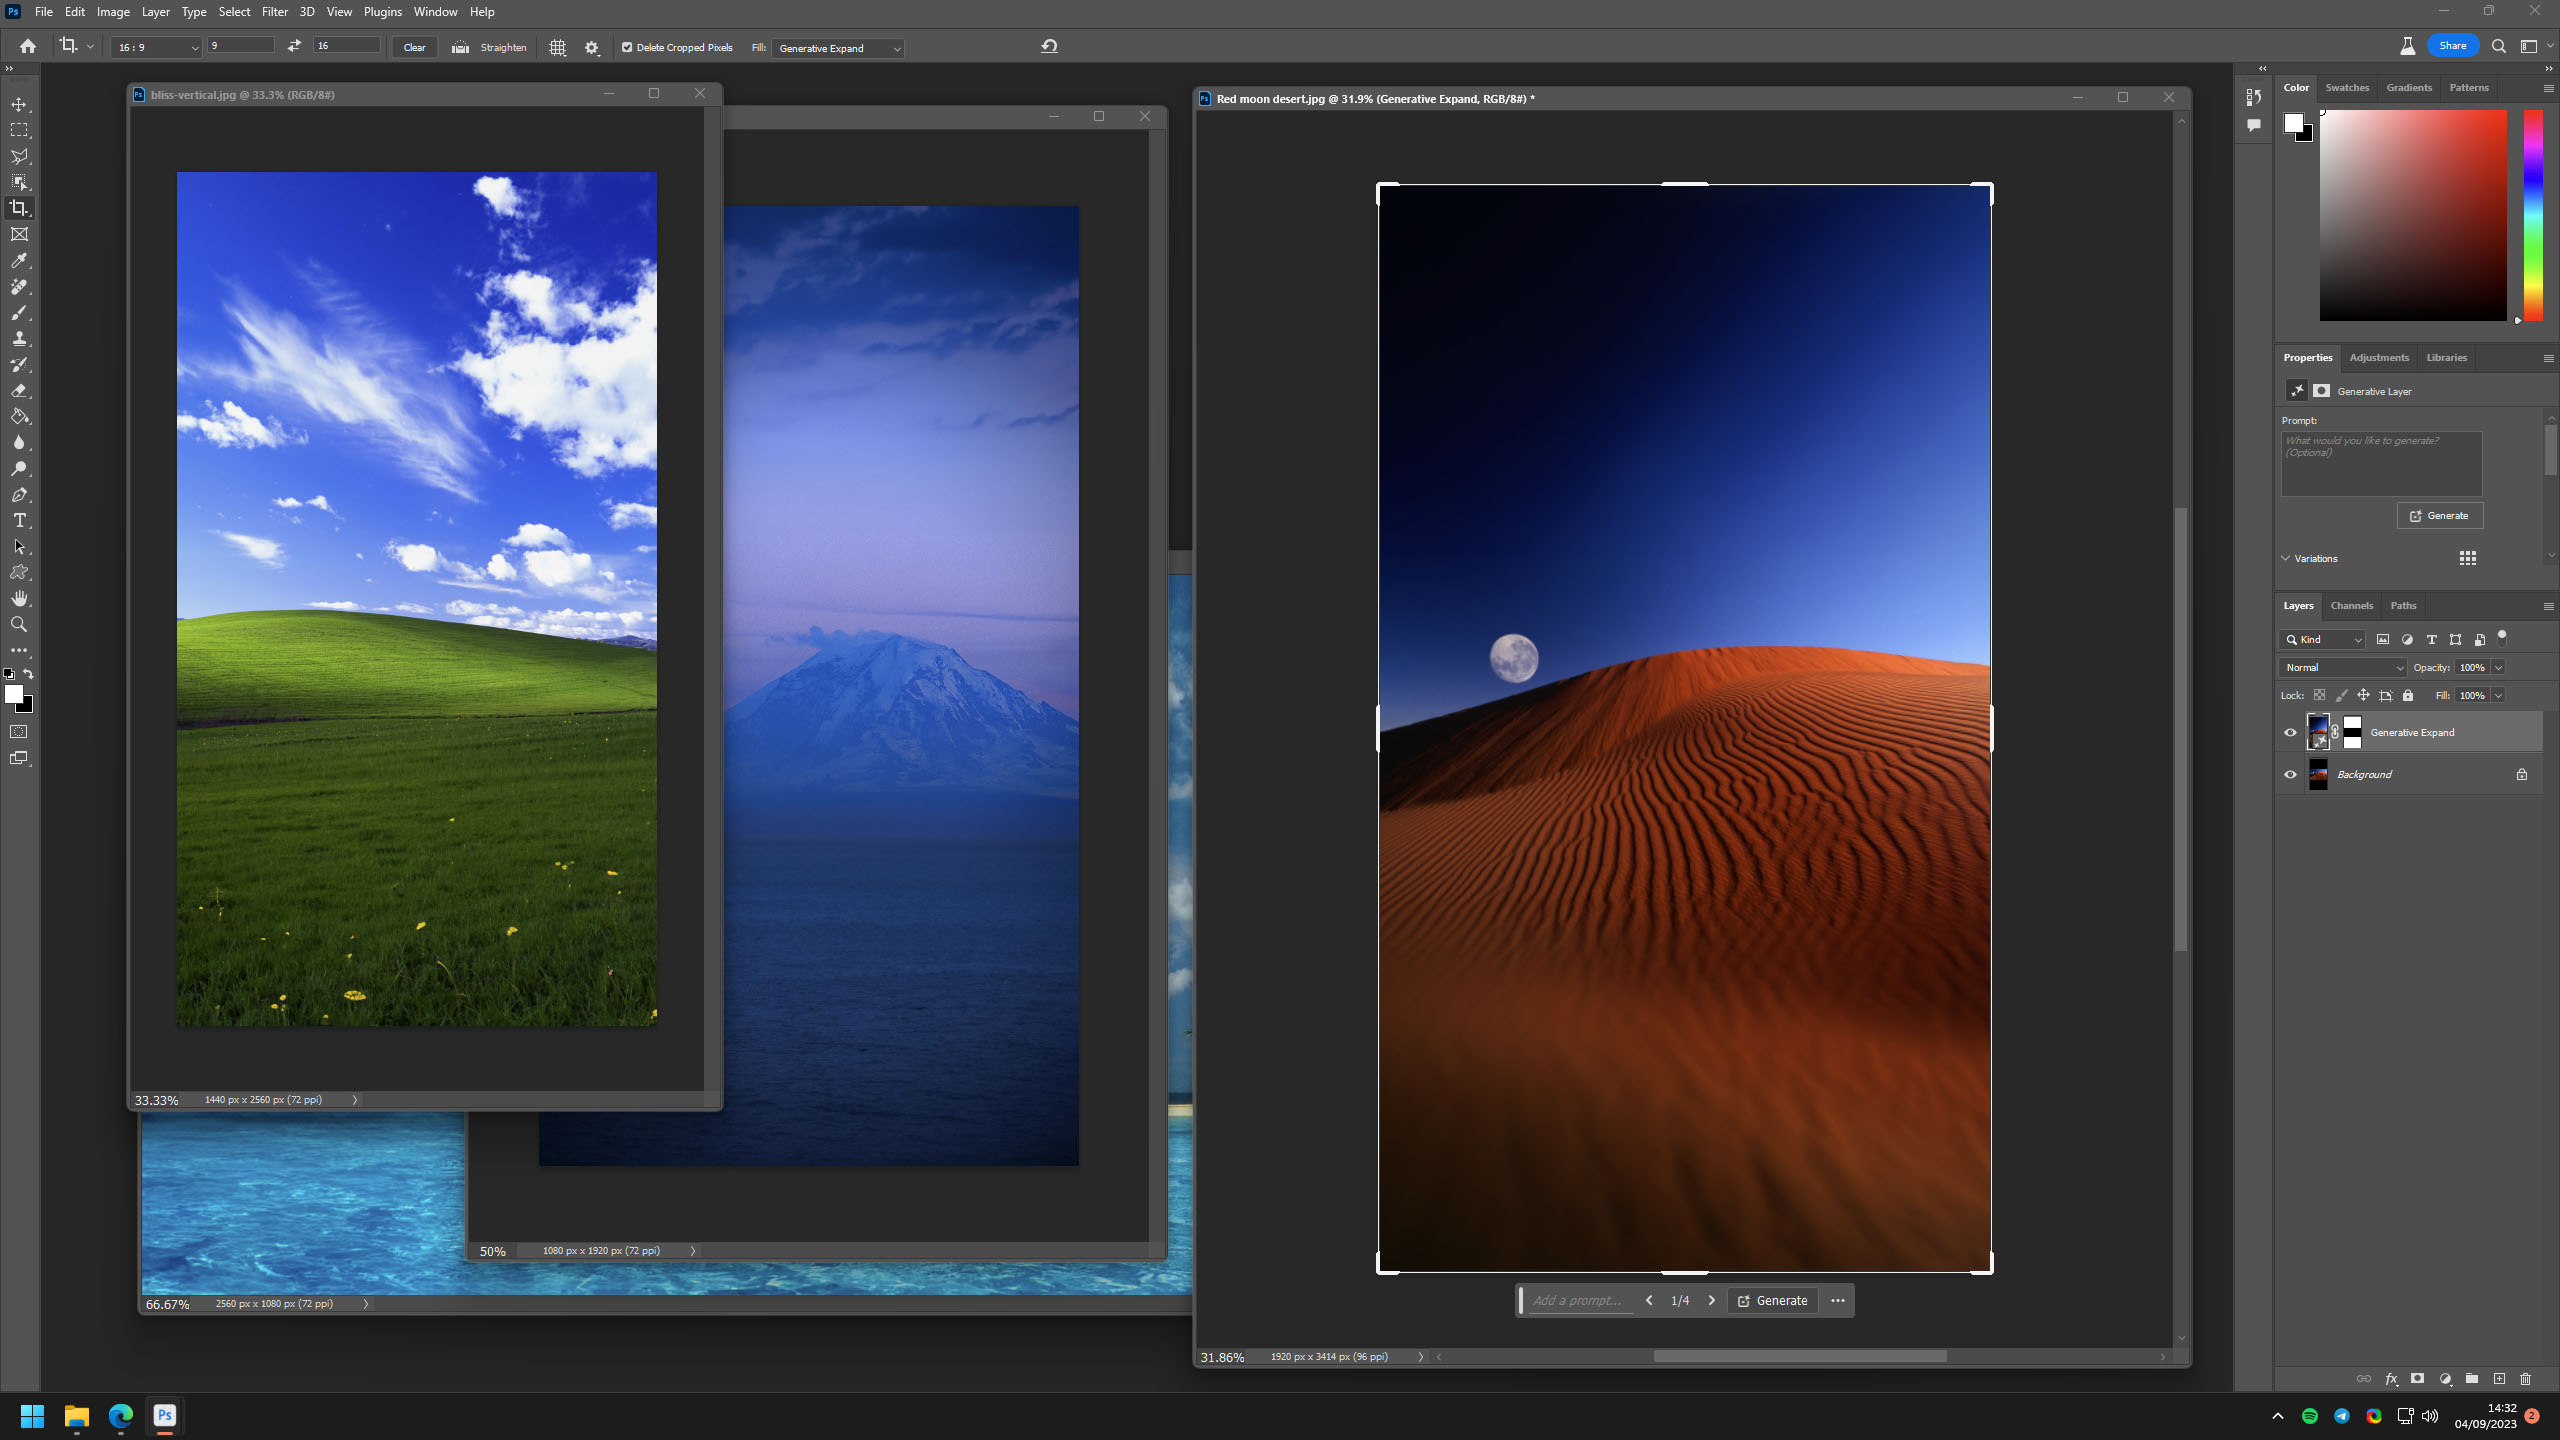 Papéis de parede do Windows XP expandidos para proporção 9:16 no Adobe Photoshop Beta